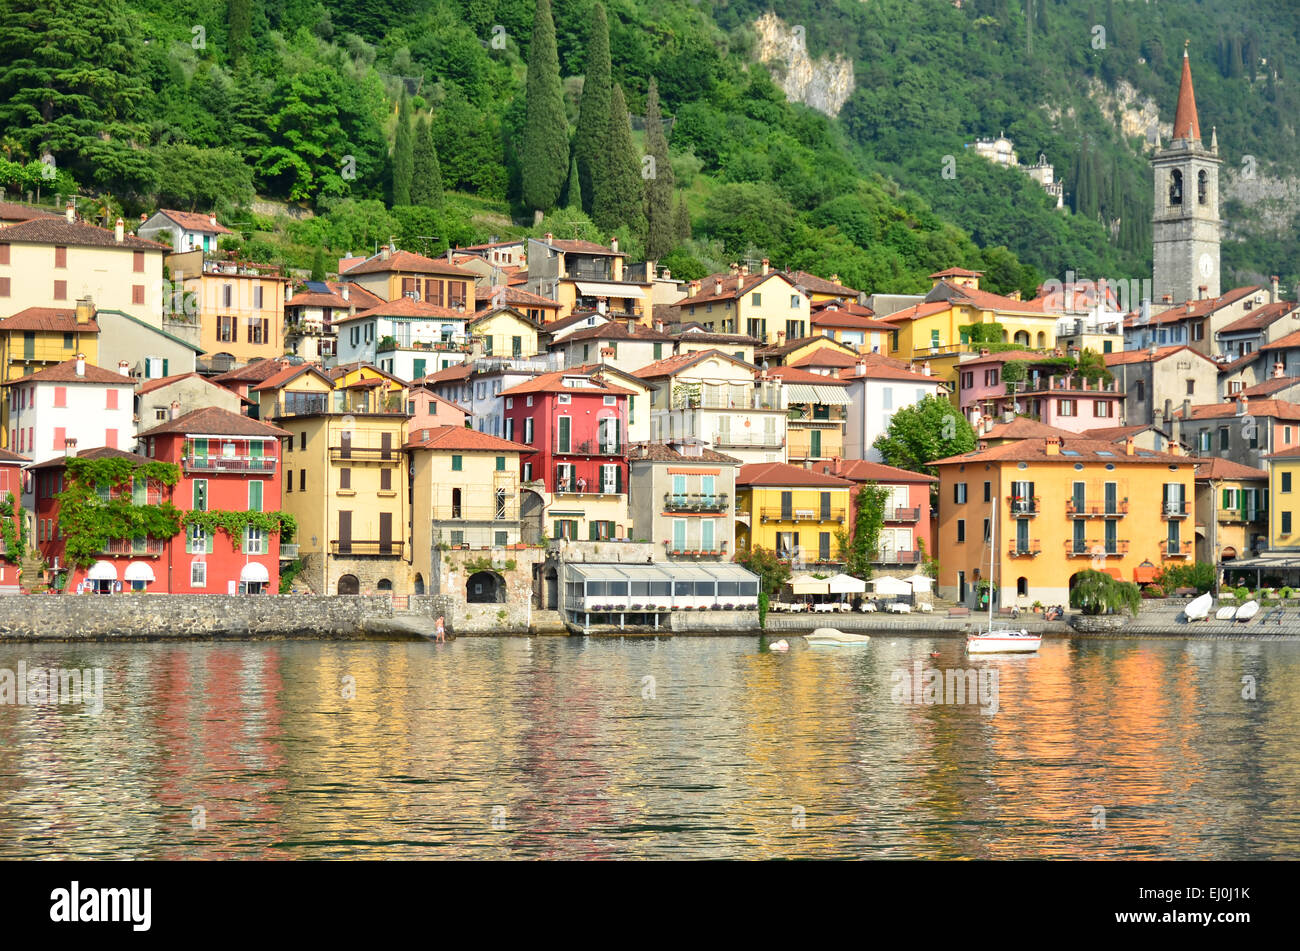 Vista dall'acqua del villaggio di Varenna sul lago di Como, considerato il più bello dei laghi italiani Foto Stock